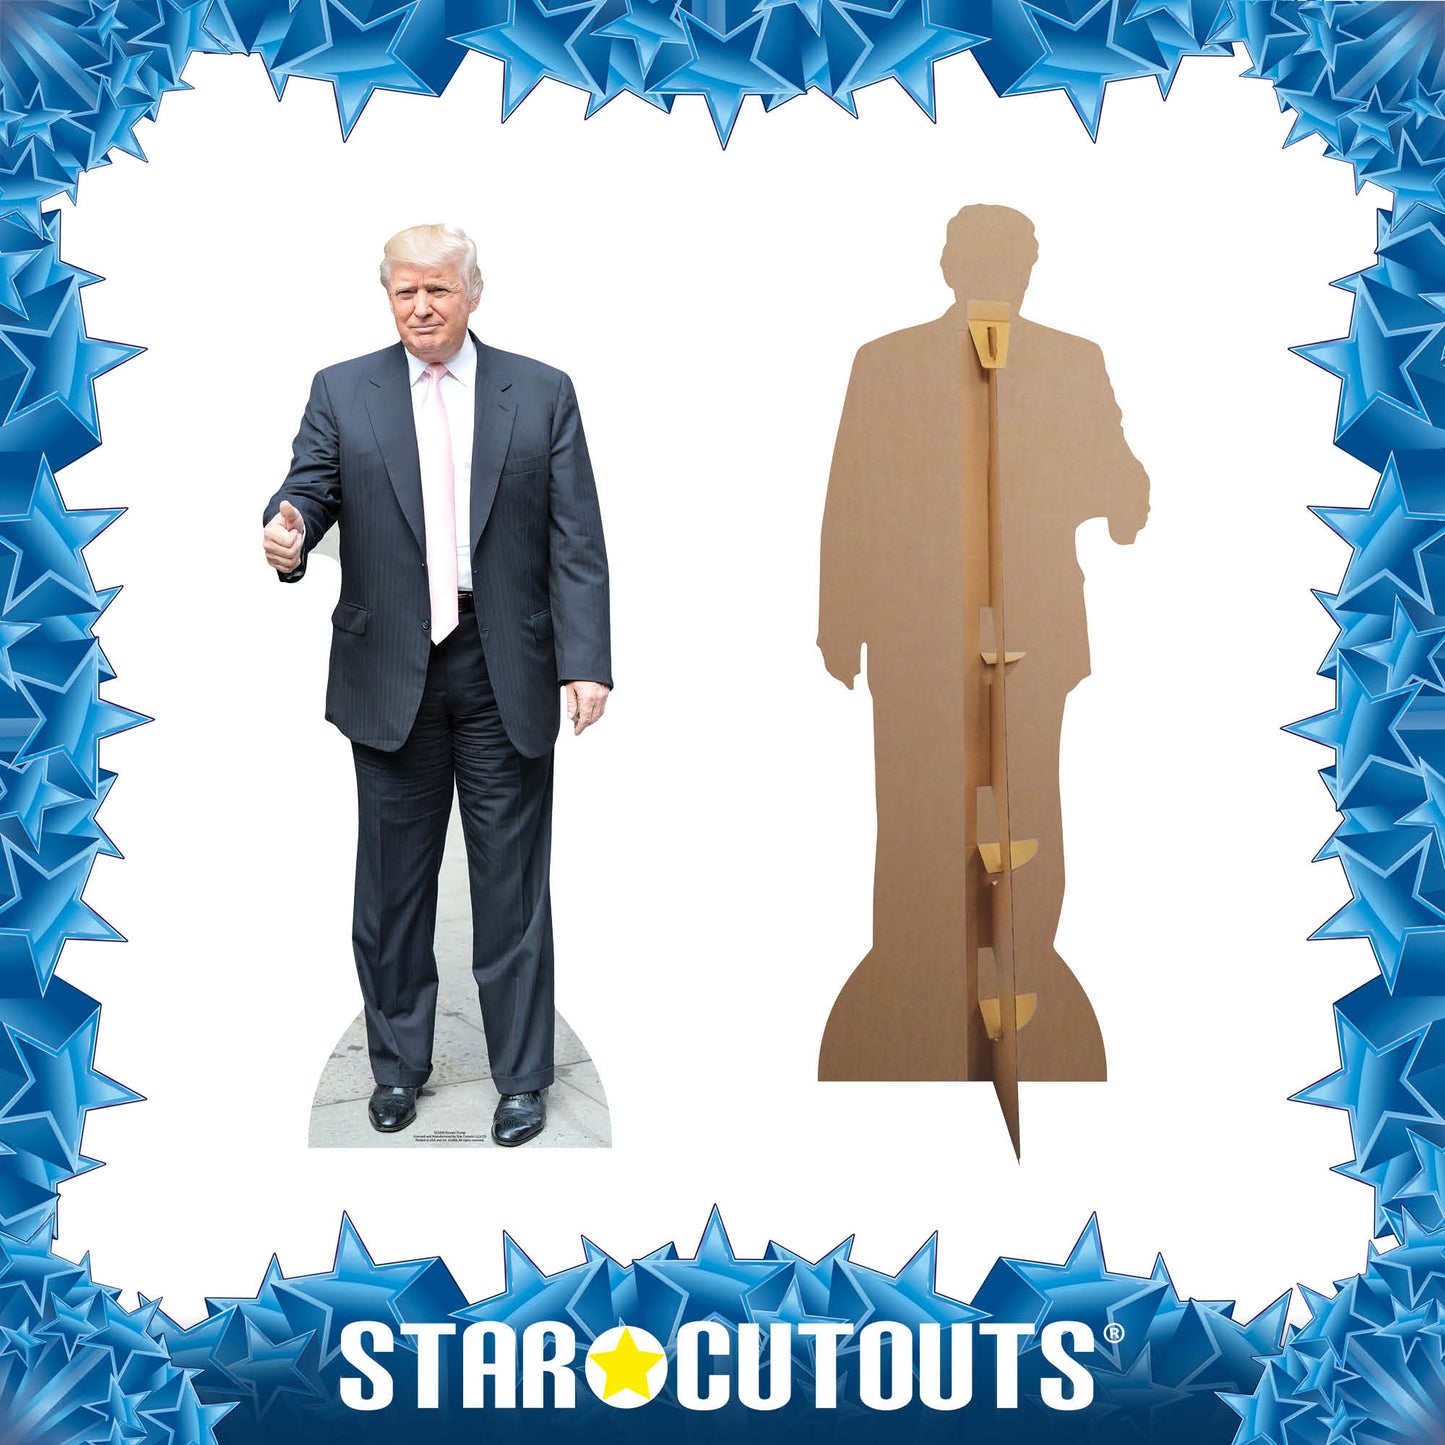 Donald Trump  Cardboard Cutout Politician